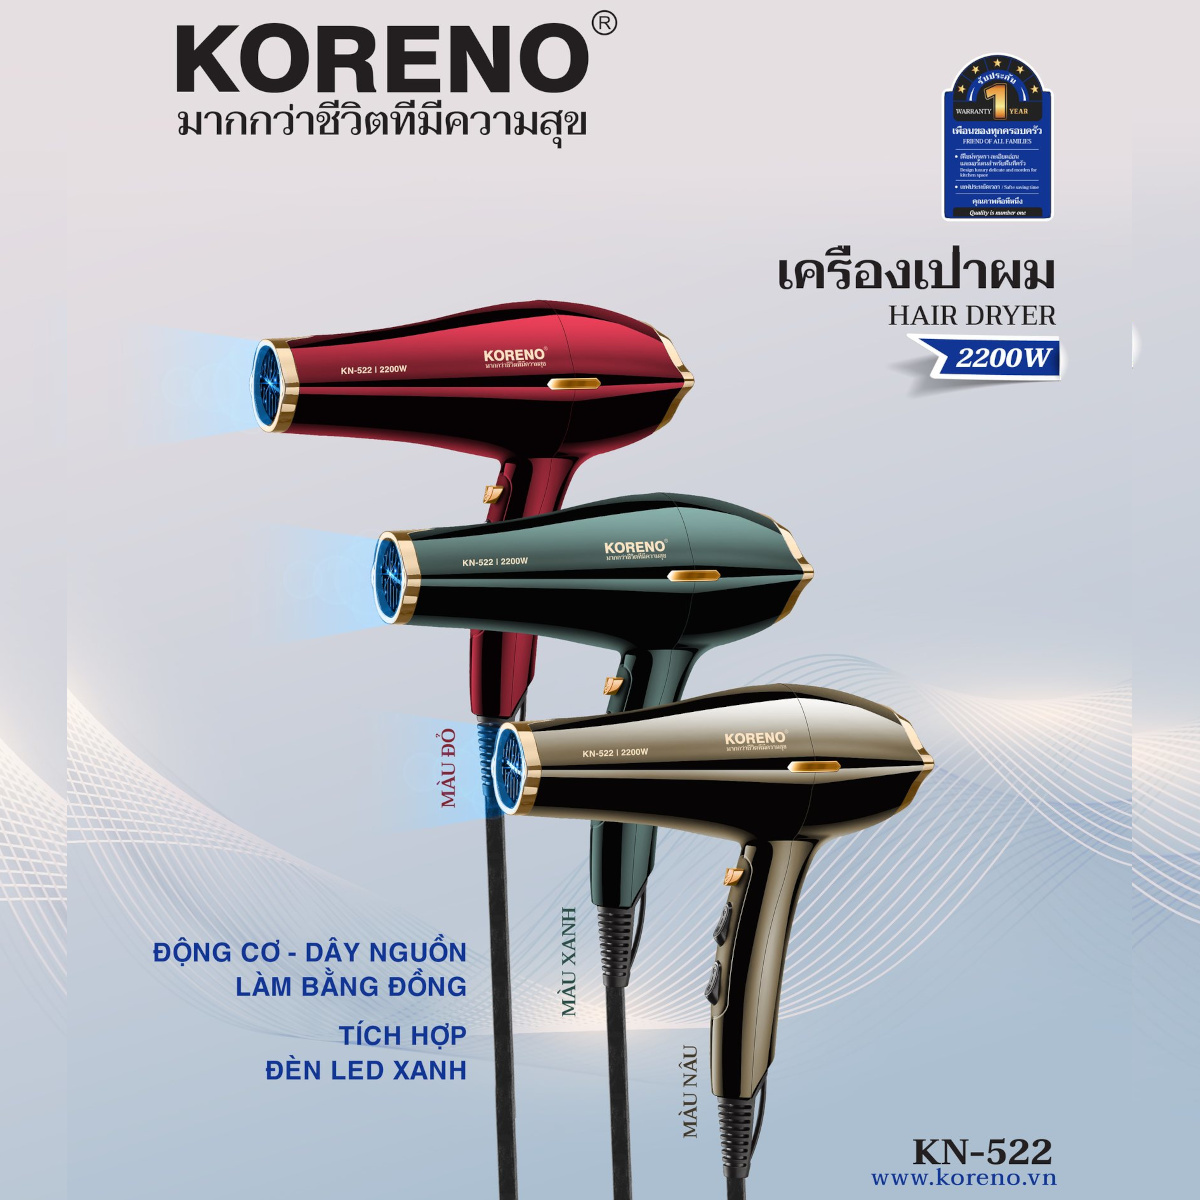 Máy sấy tóc 2 chiều nóng lạnh Koreno KN 522, công suất 2200w, bảo hành 12 tháng